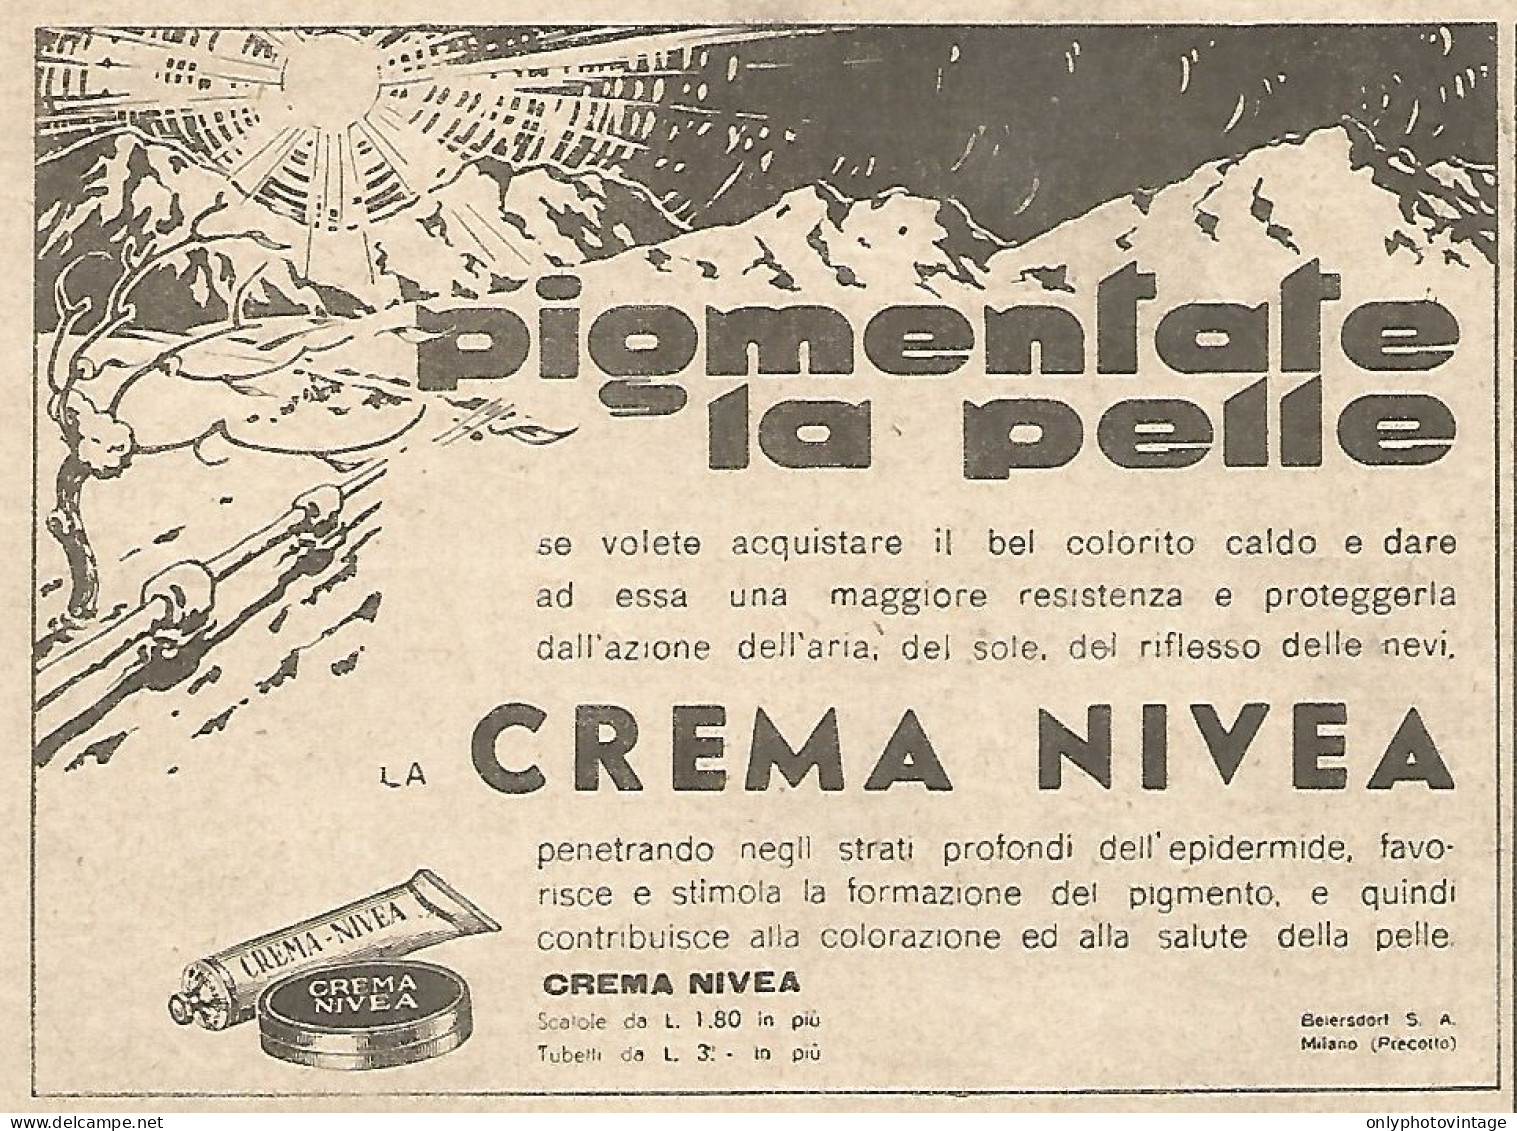 Crema NIVEA - Pigmentate La Pelle... - Pubblicità Del 1934 - Vintage Ad - Advertising